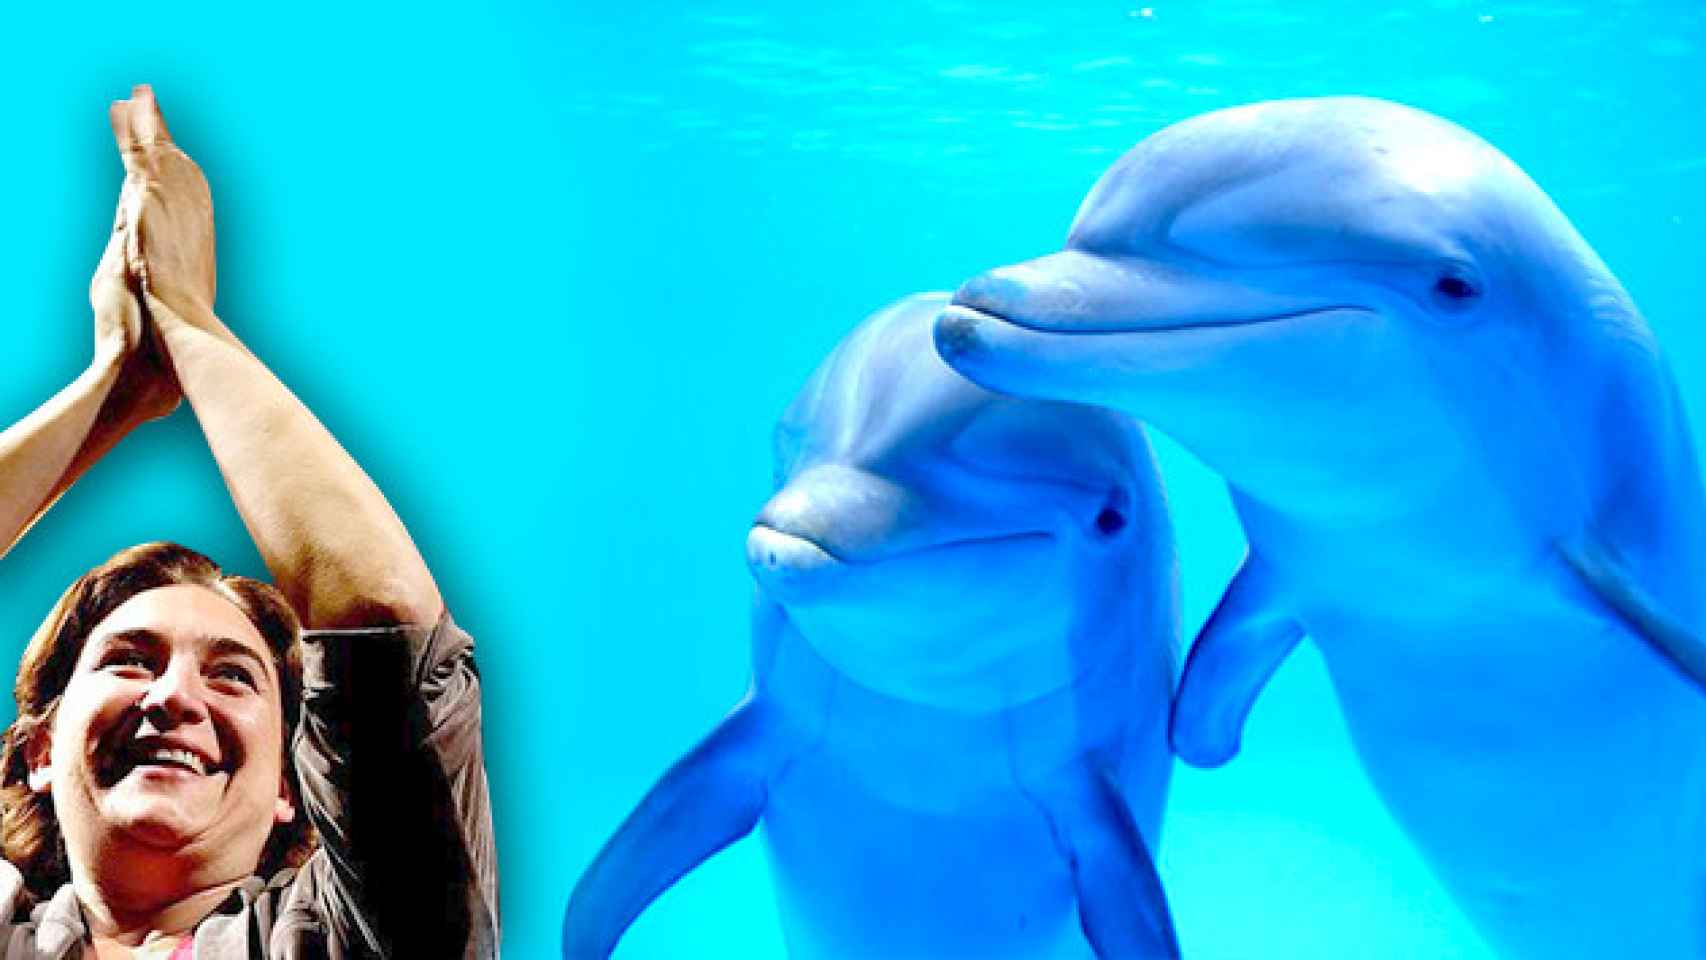 La alcaldesa de Barcelona, Ada Colau, y los delfines del Zoo de Barcelona./ FOTOMONTAJE CG